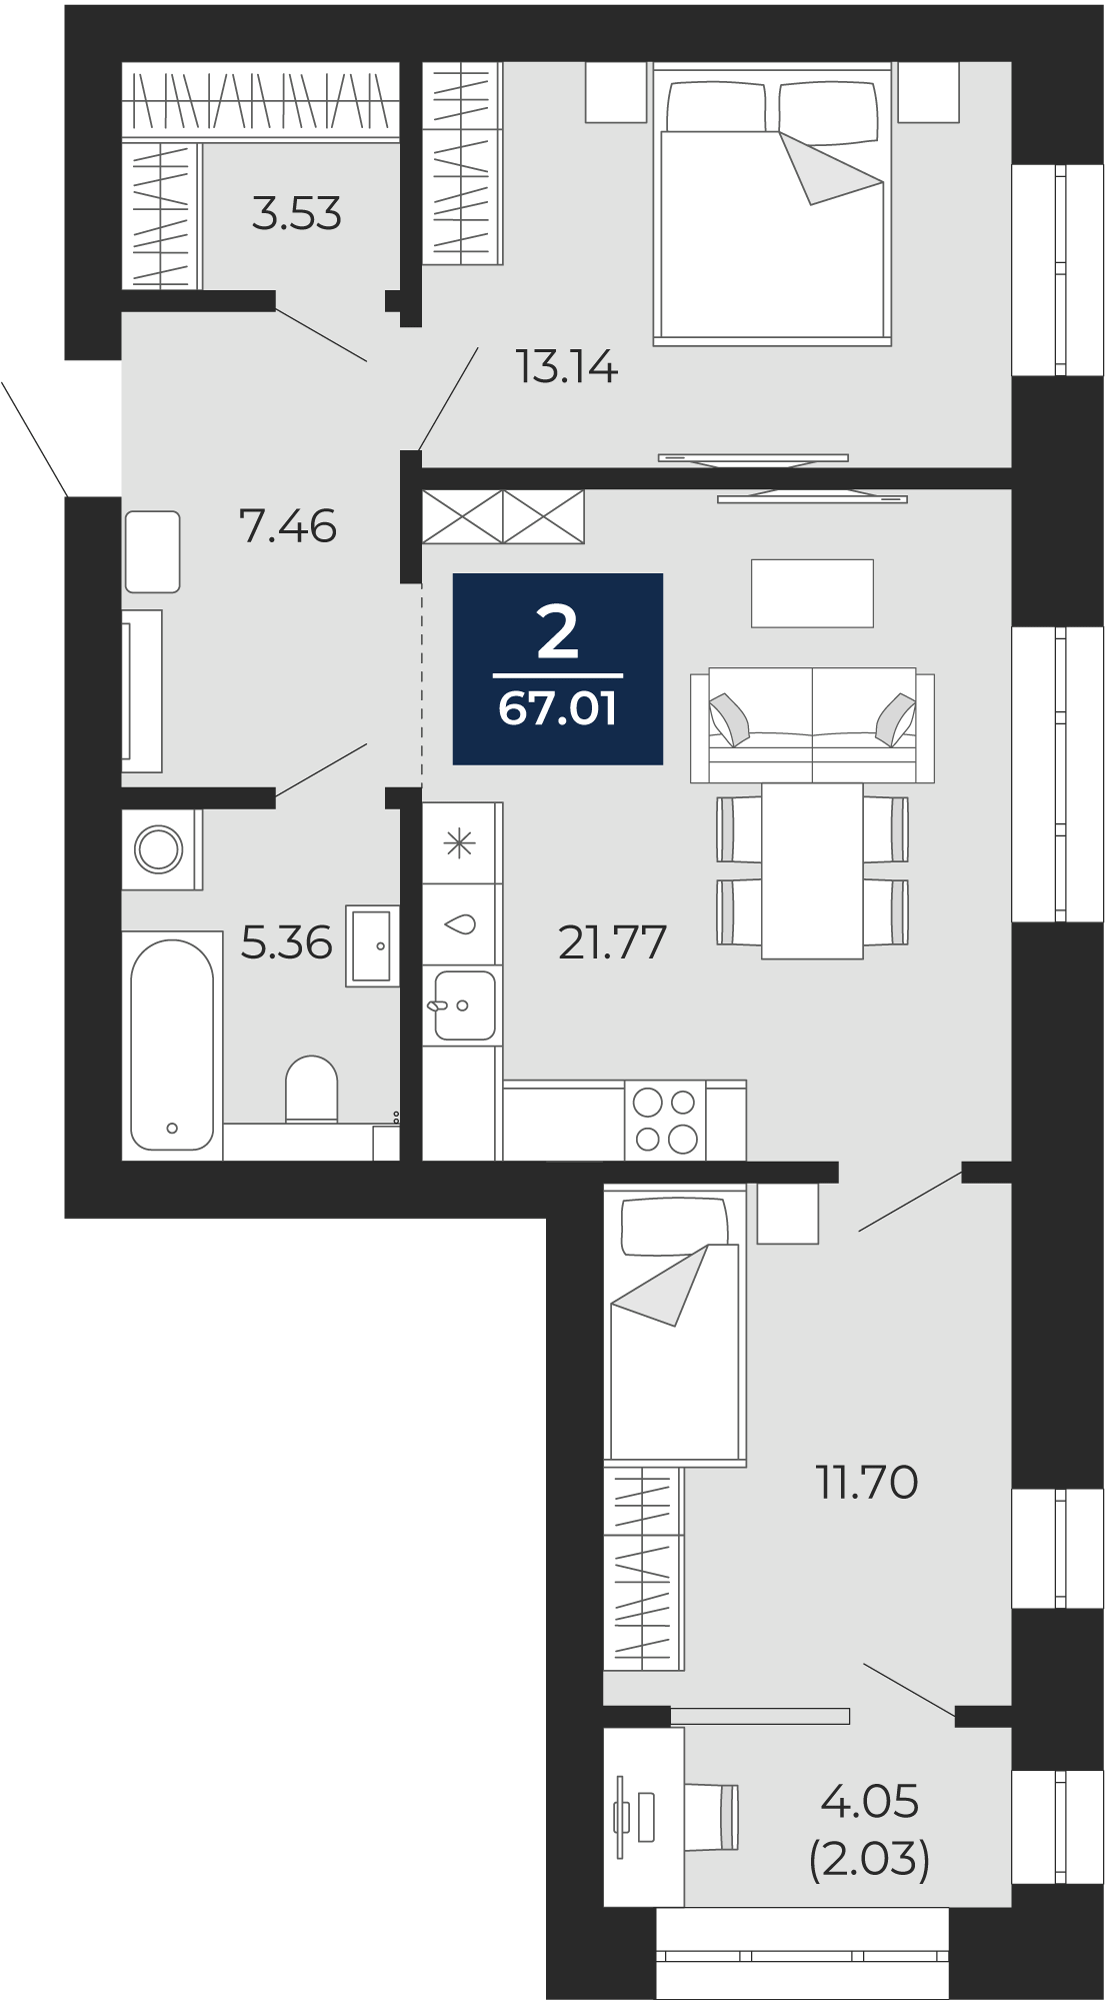 Квартира № 188, 2-комнатная, 67.01 кв. м, 12 этаж